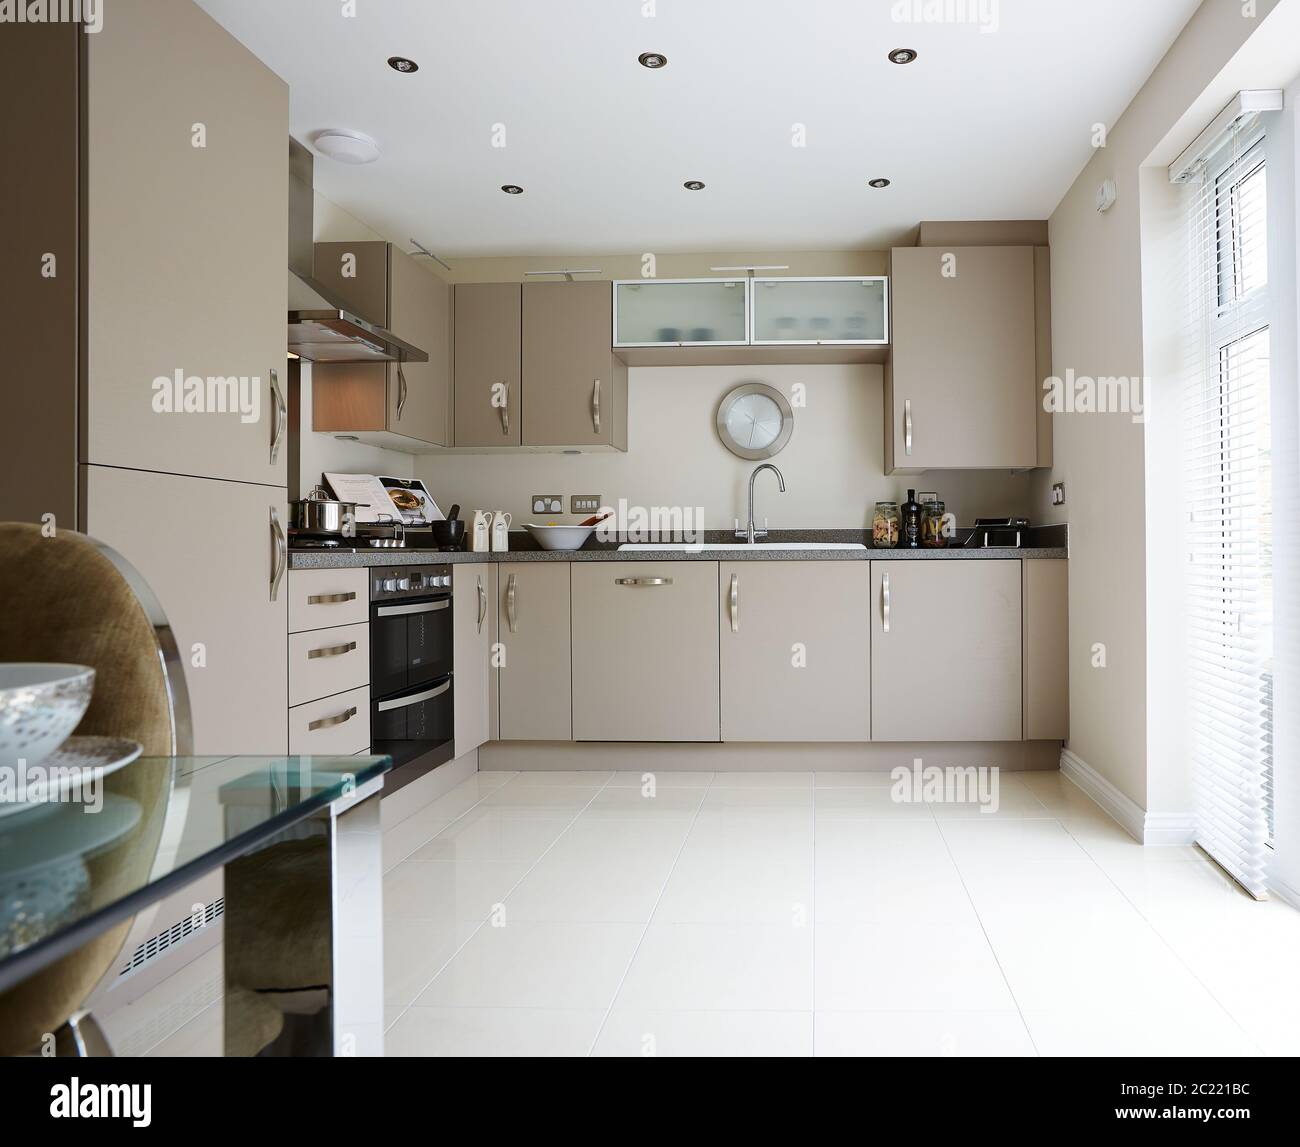 Moderne Einrichtung einer großen Küche mit modularen Möbeln in weißer Farbe Stockfoto